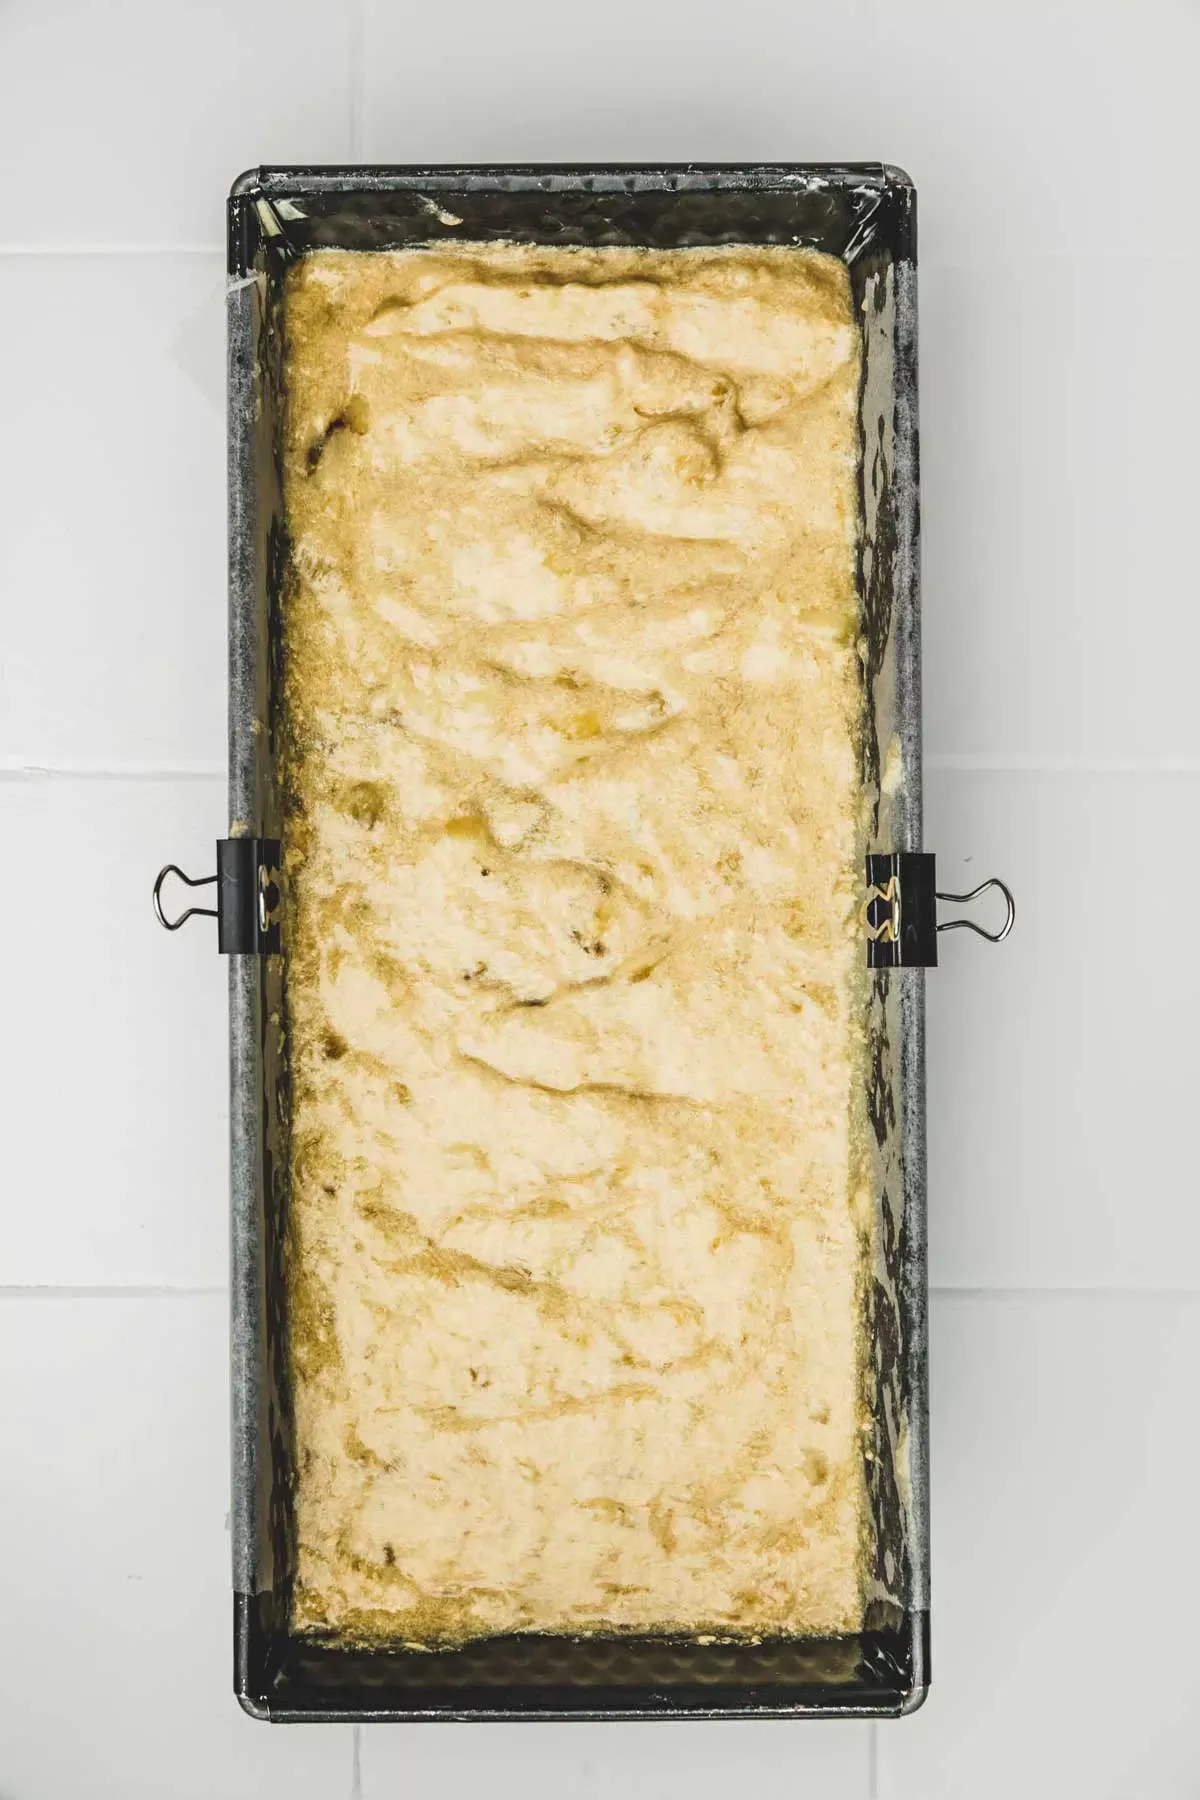 walnut banana bread batter in a loaf pan